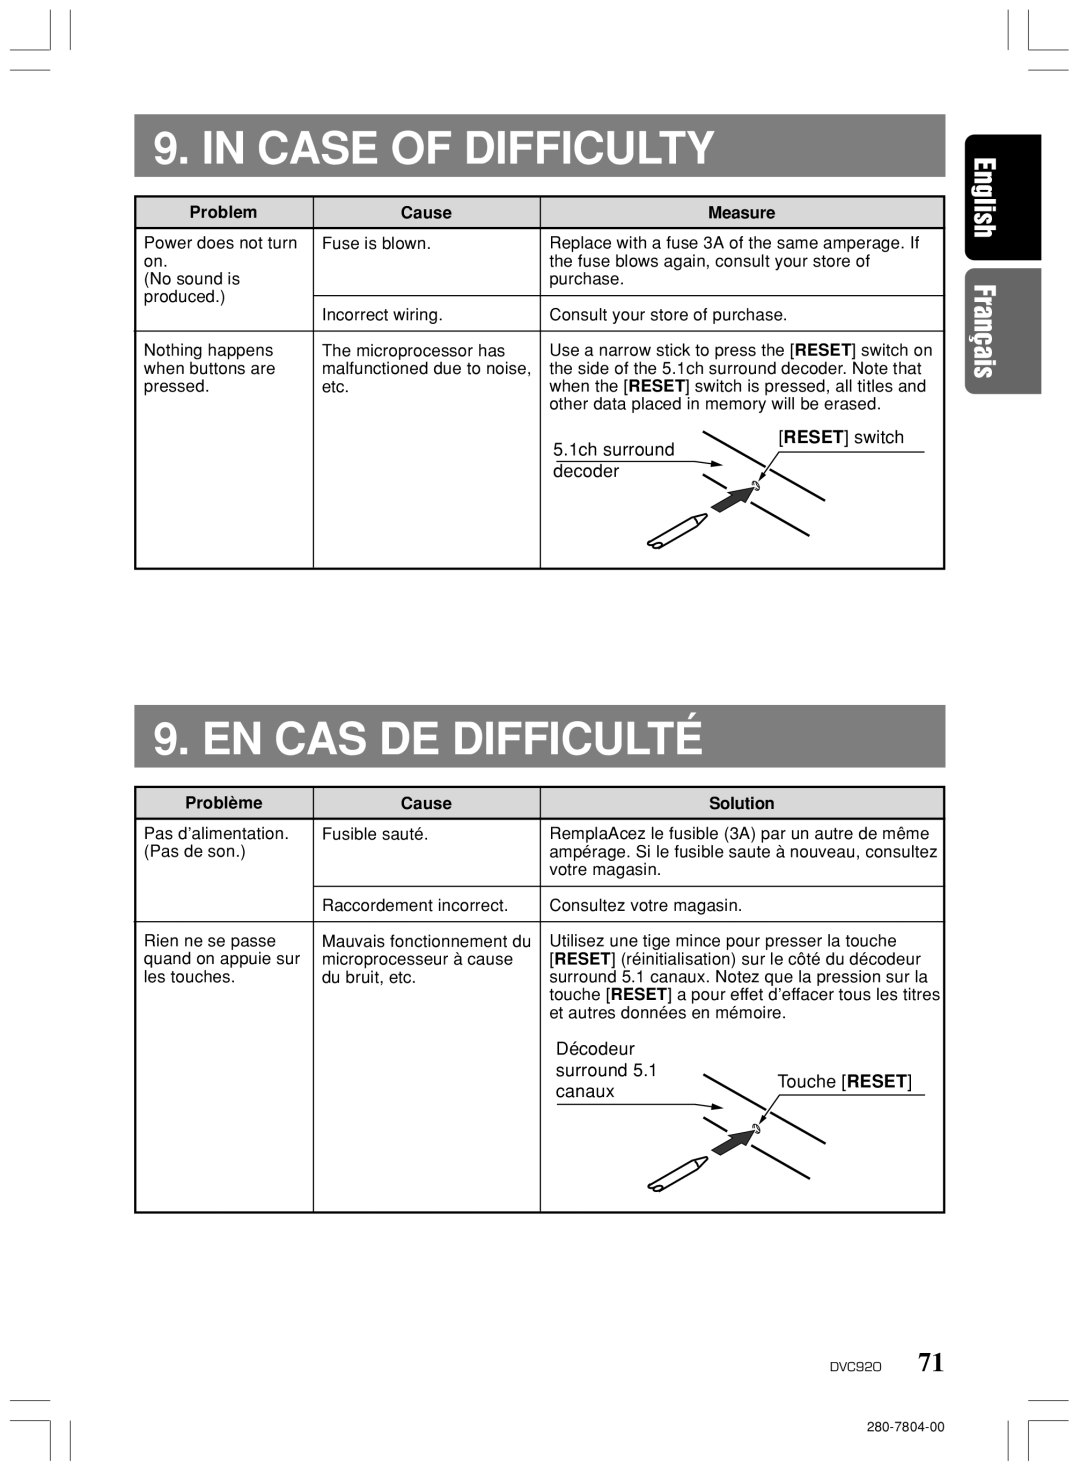 Clarion DVC920 manual Case of Difficulty, EN CAS DE Difficulté, Décodeur Surround Touche Reset Canaux 